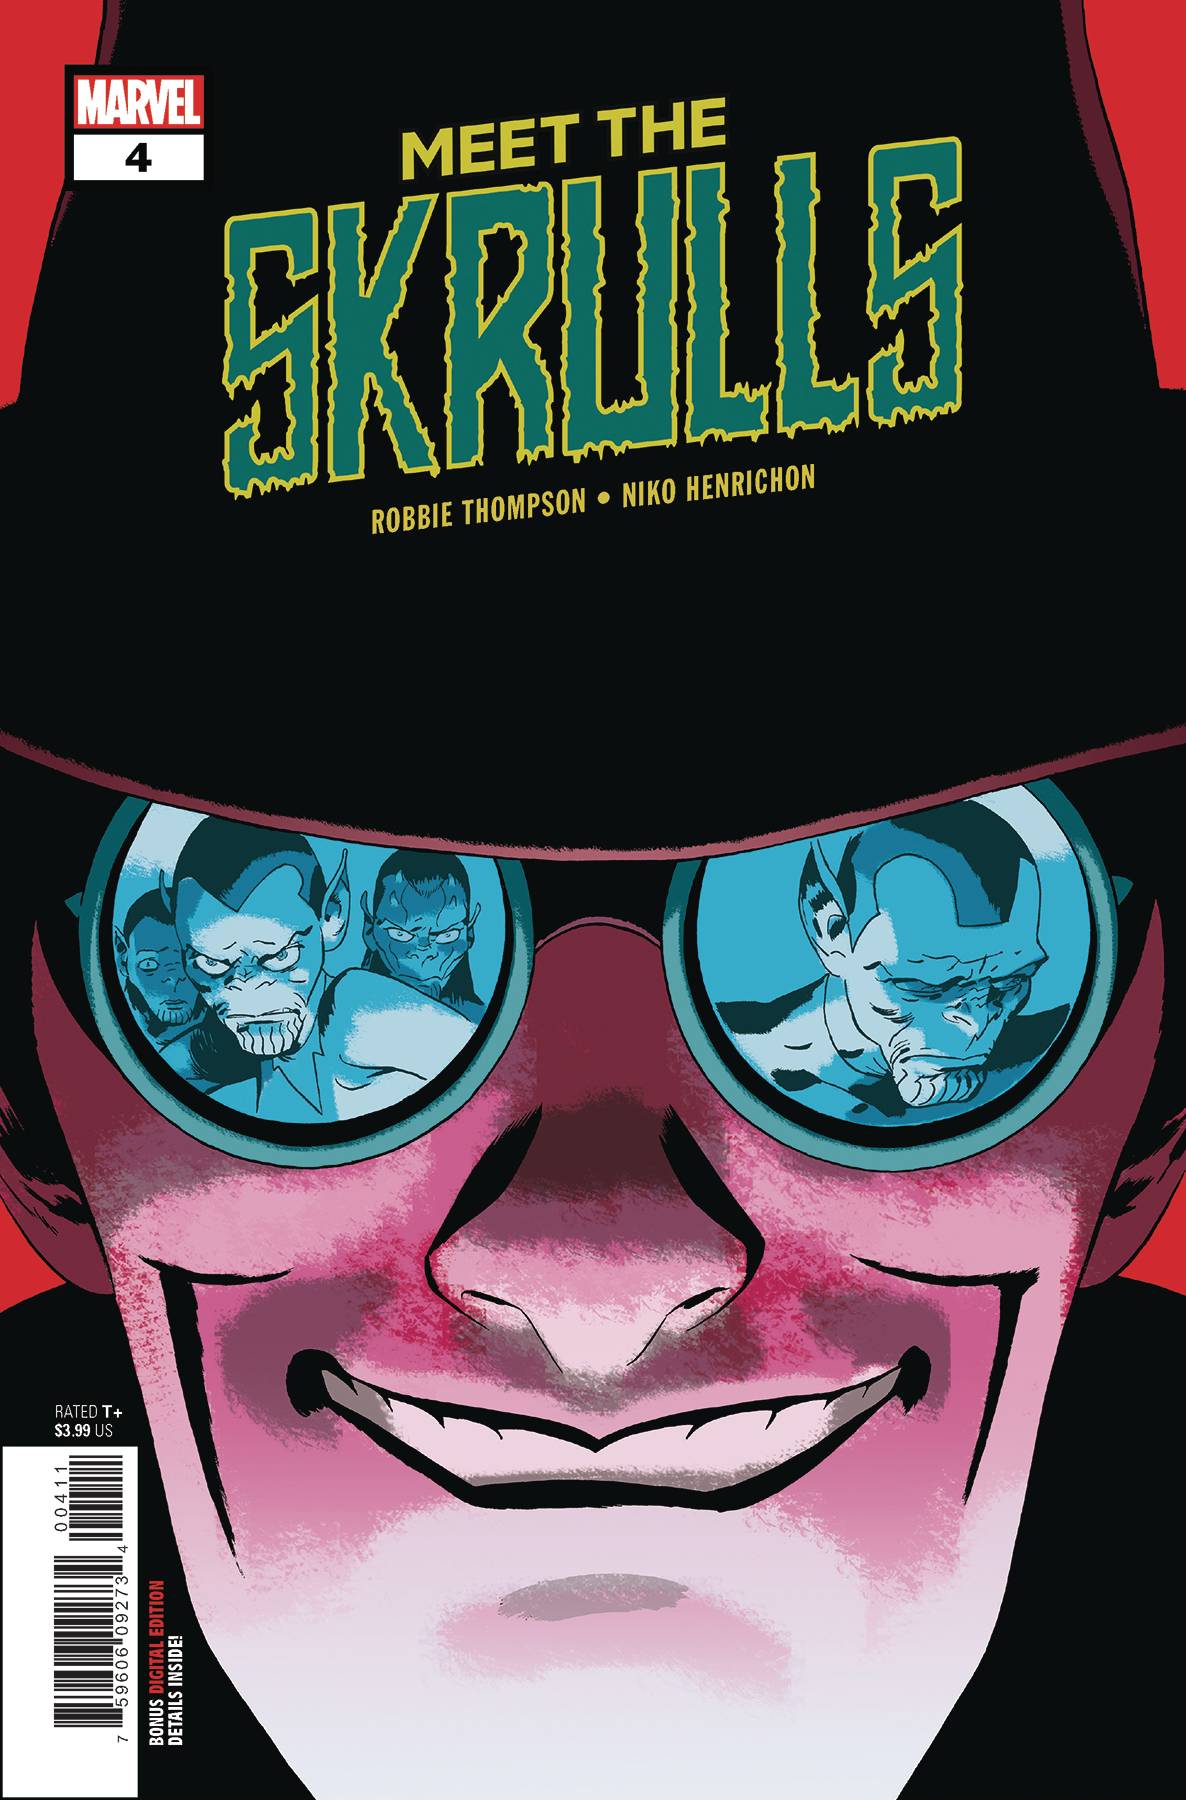 Meet The Skrulls #4 (of 5) [2019]